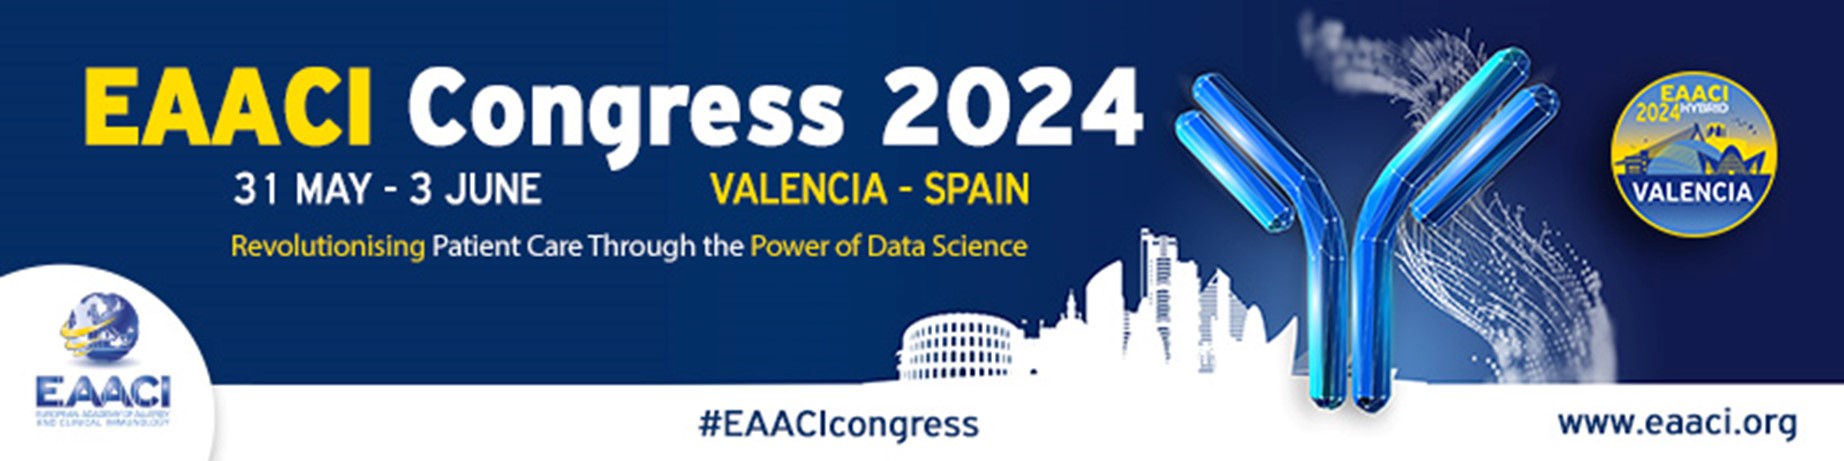 EAACI Congress 2024